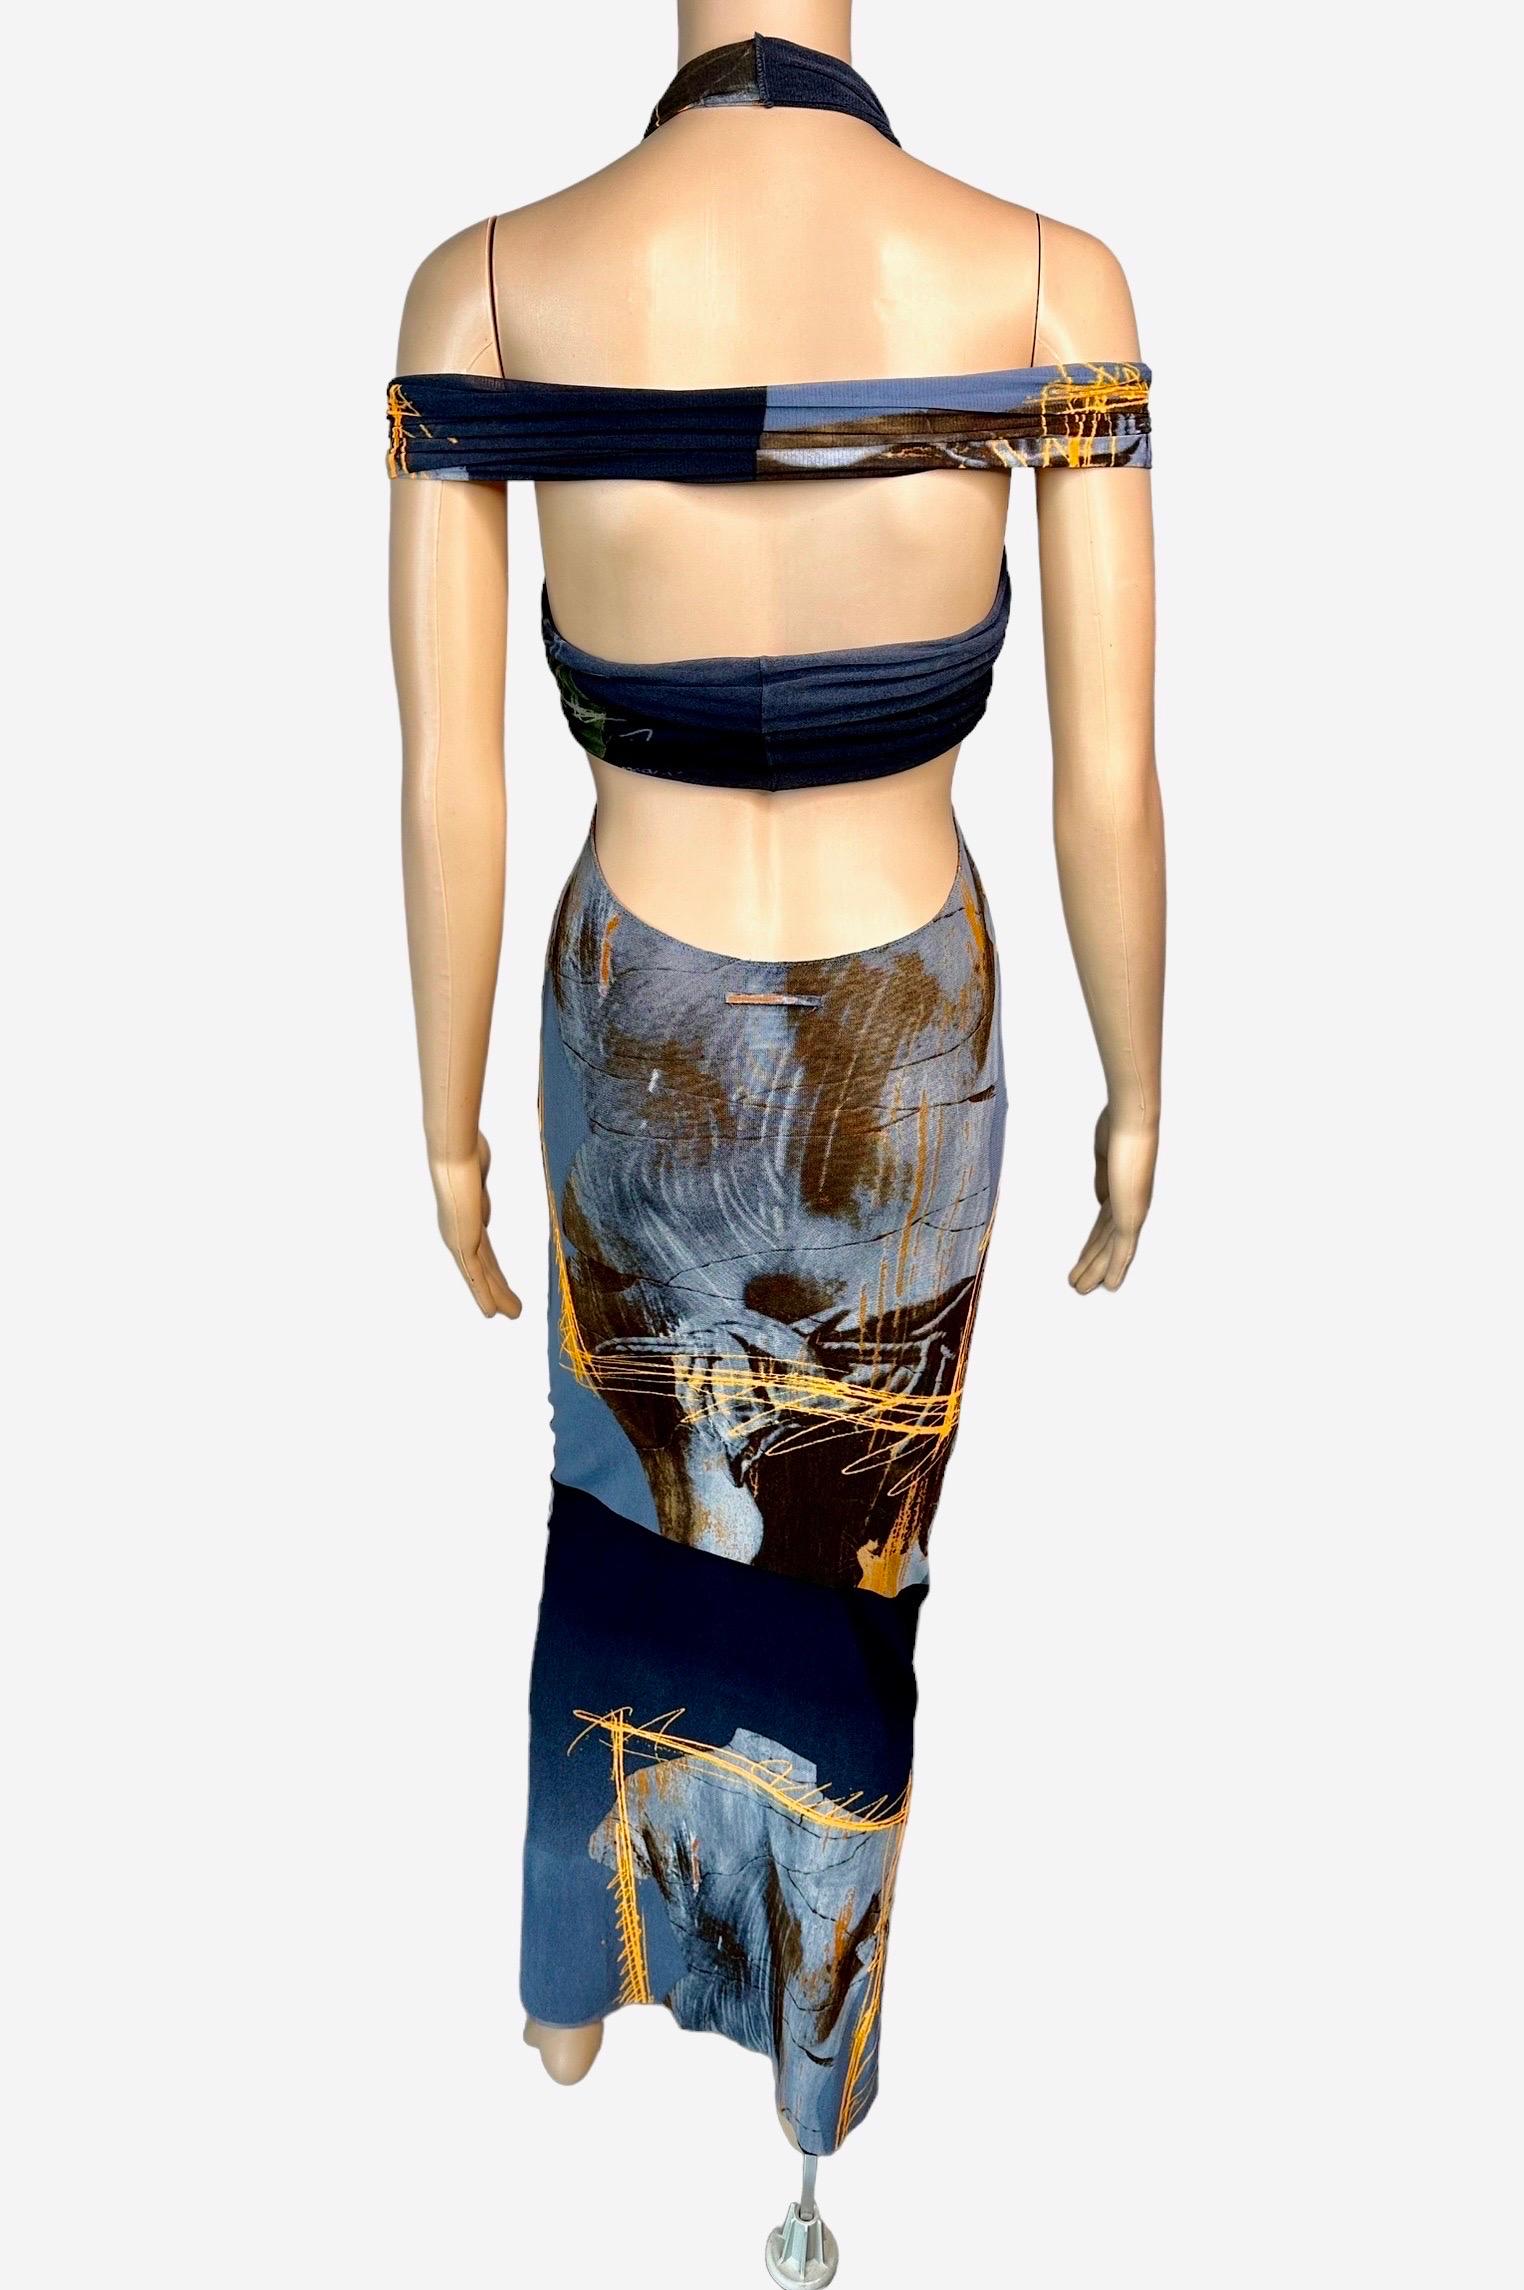 Jean Paul Gaultier Soleil S/S 1999 Vintage Venus De Milo Cutout Mesh Sheer Dress 8